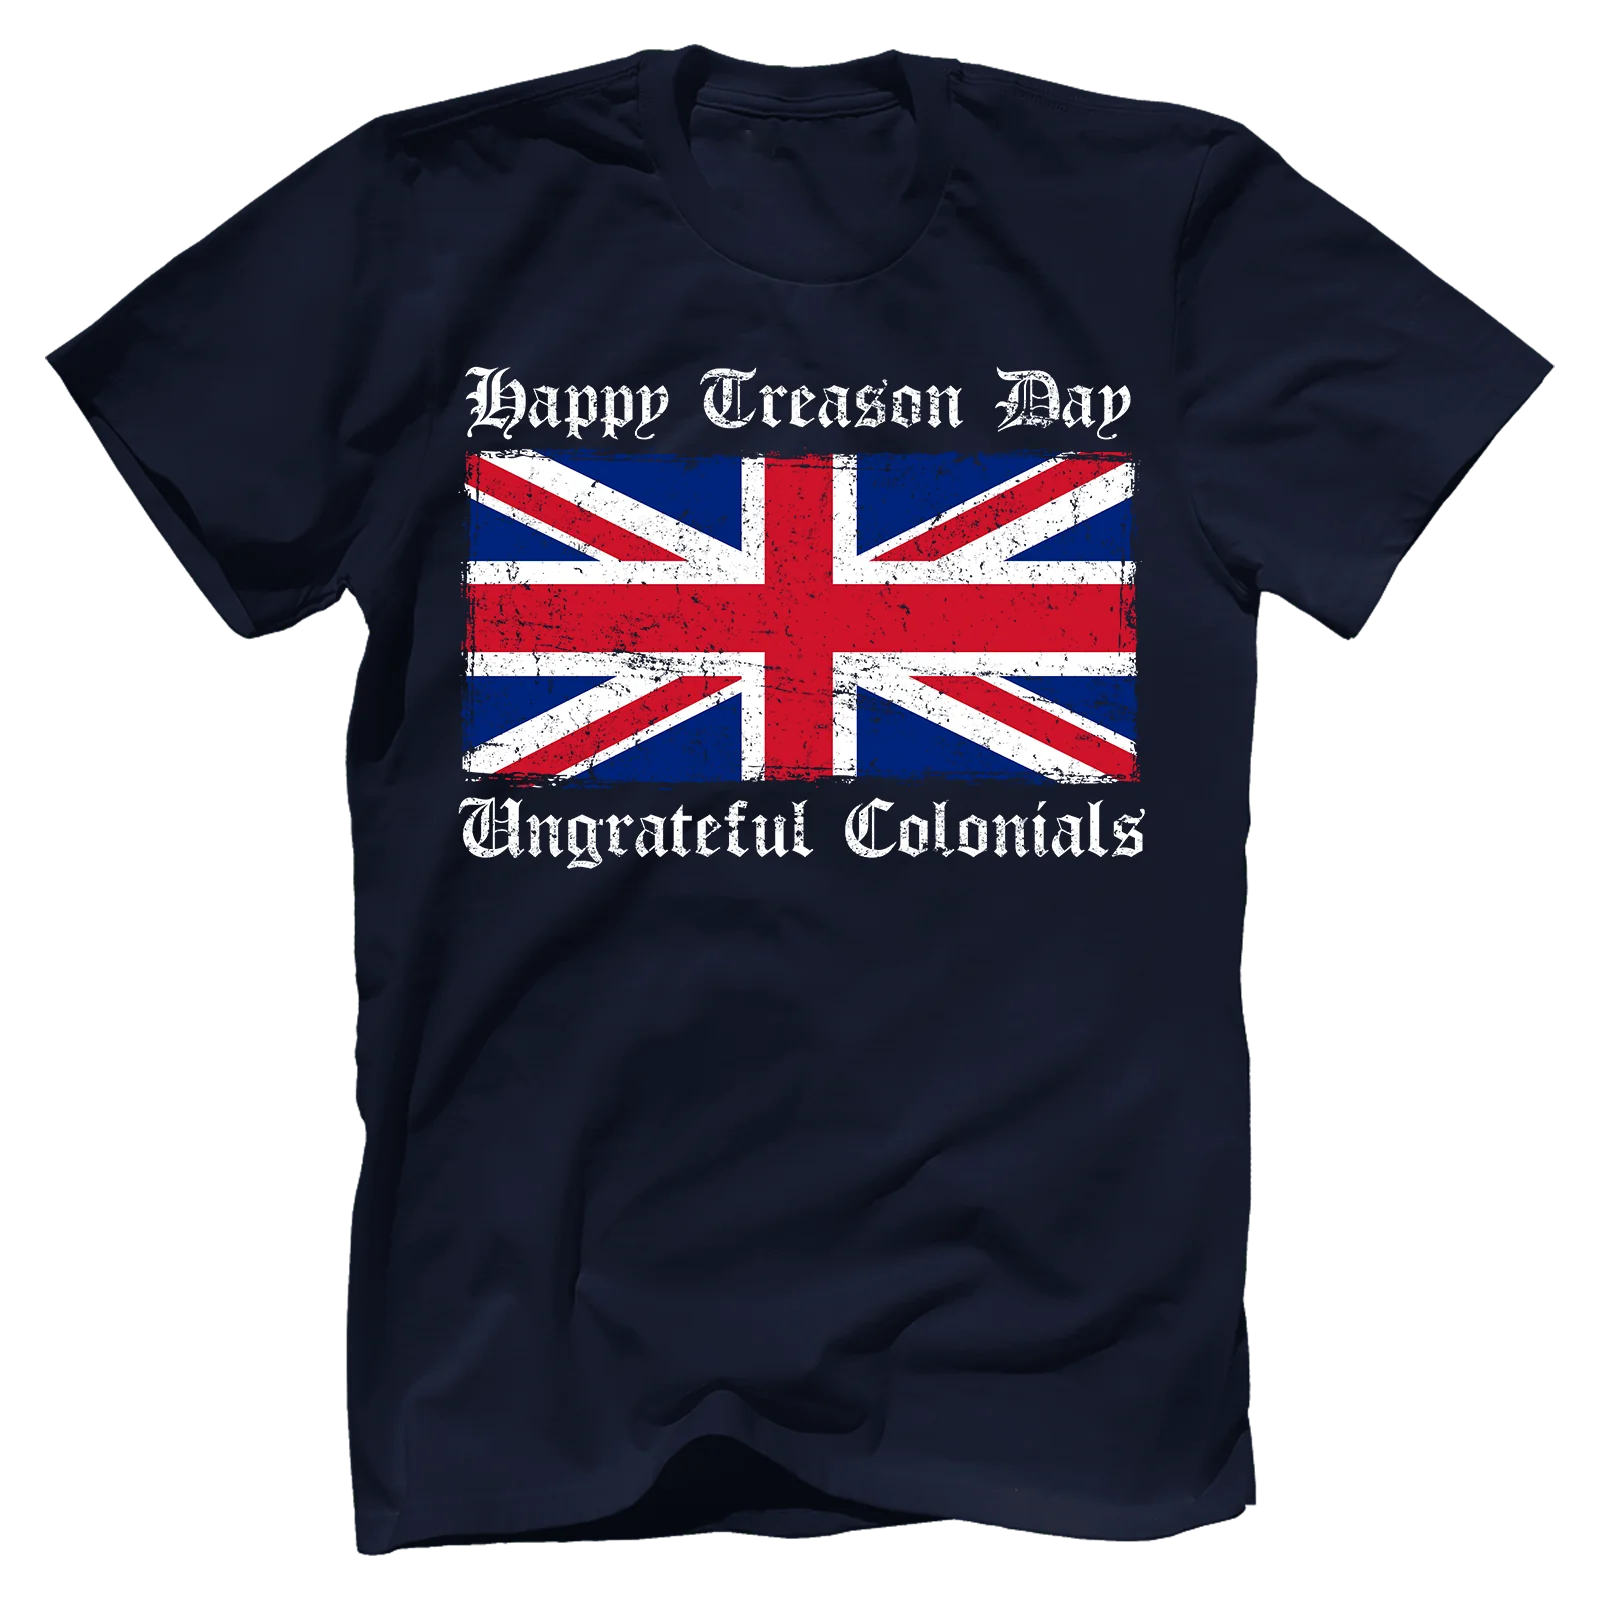 Happy Treason Day T-shirt - GB11